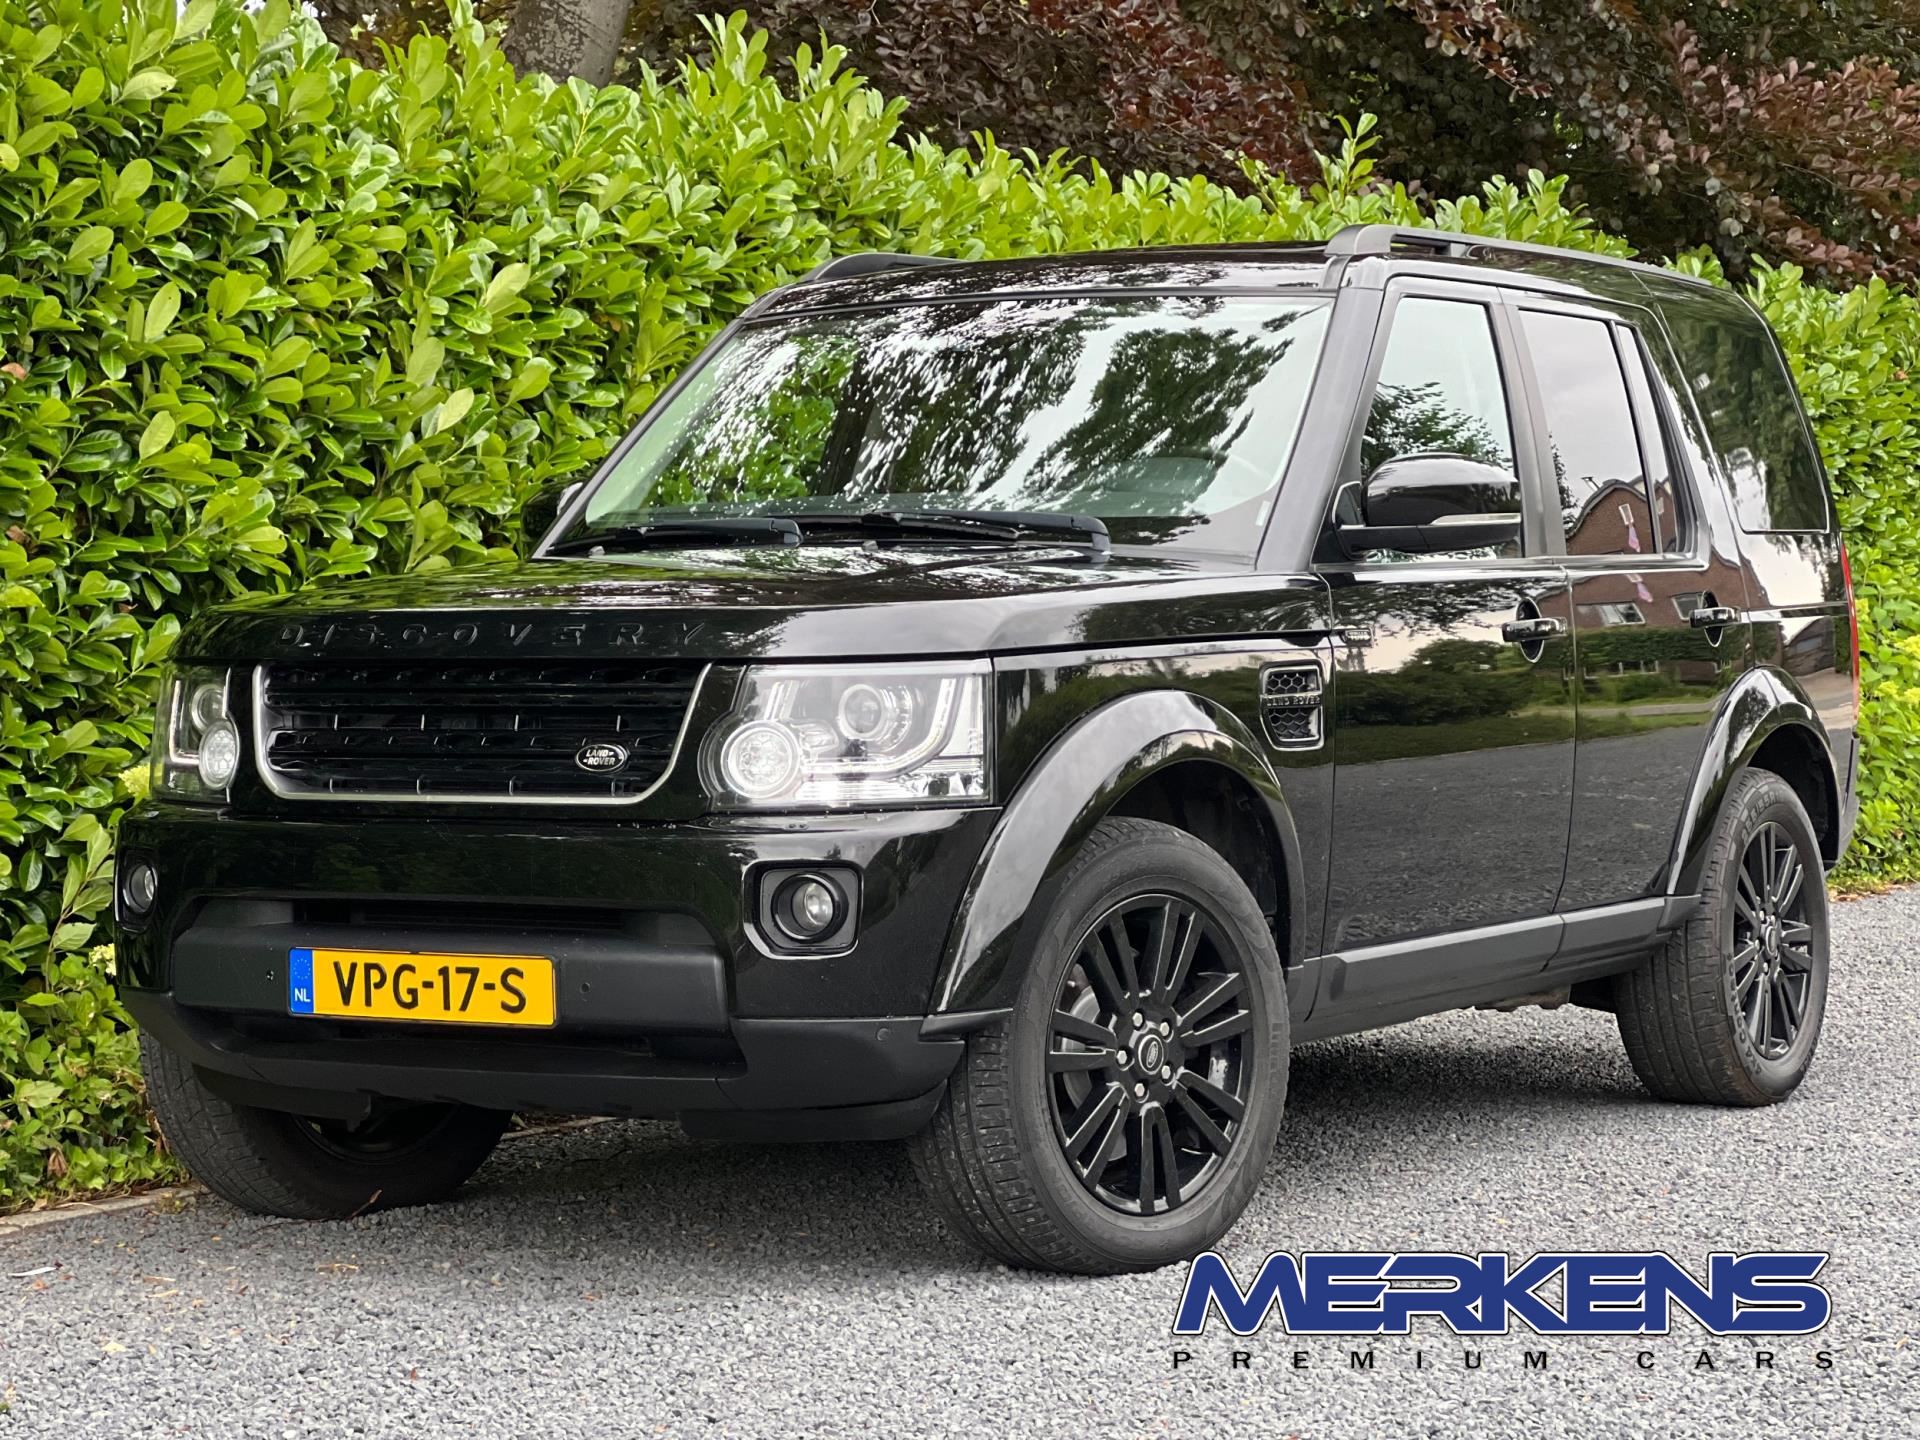 Zoekmachinemarketing Inademen Minister Land Rover DISCOVERY - 3.0 TDV6 HSE Grijs Kenteken / Commercial /  Bedrijfswagen Diesel uit 2014 - www.merkenspremiumcars.nl